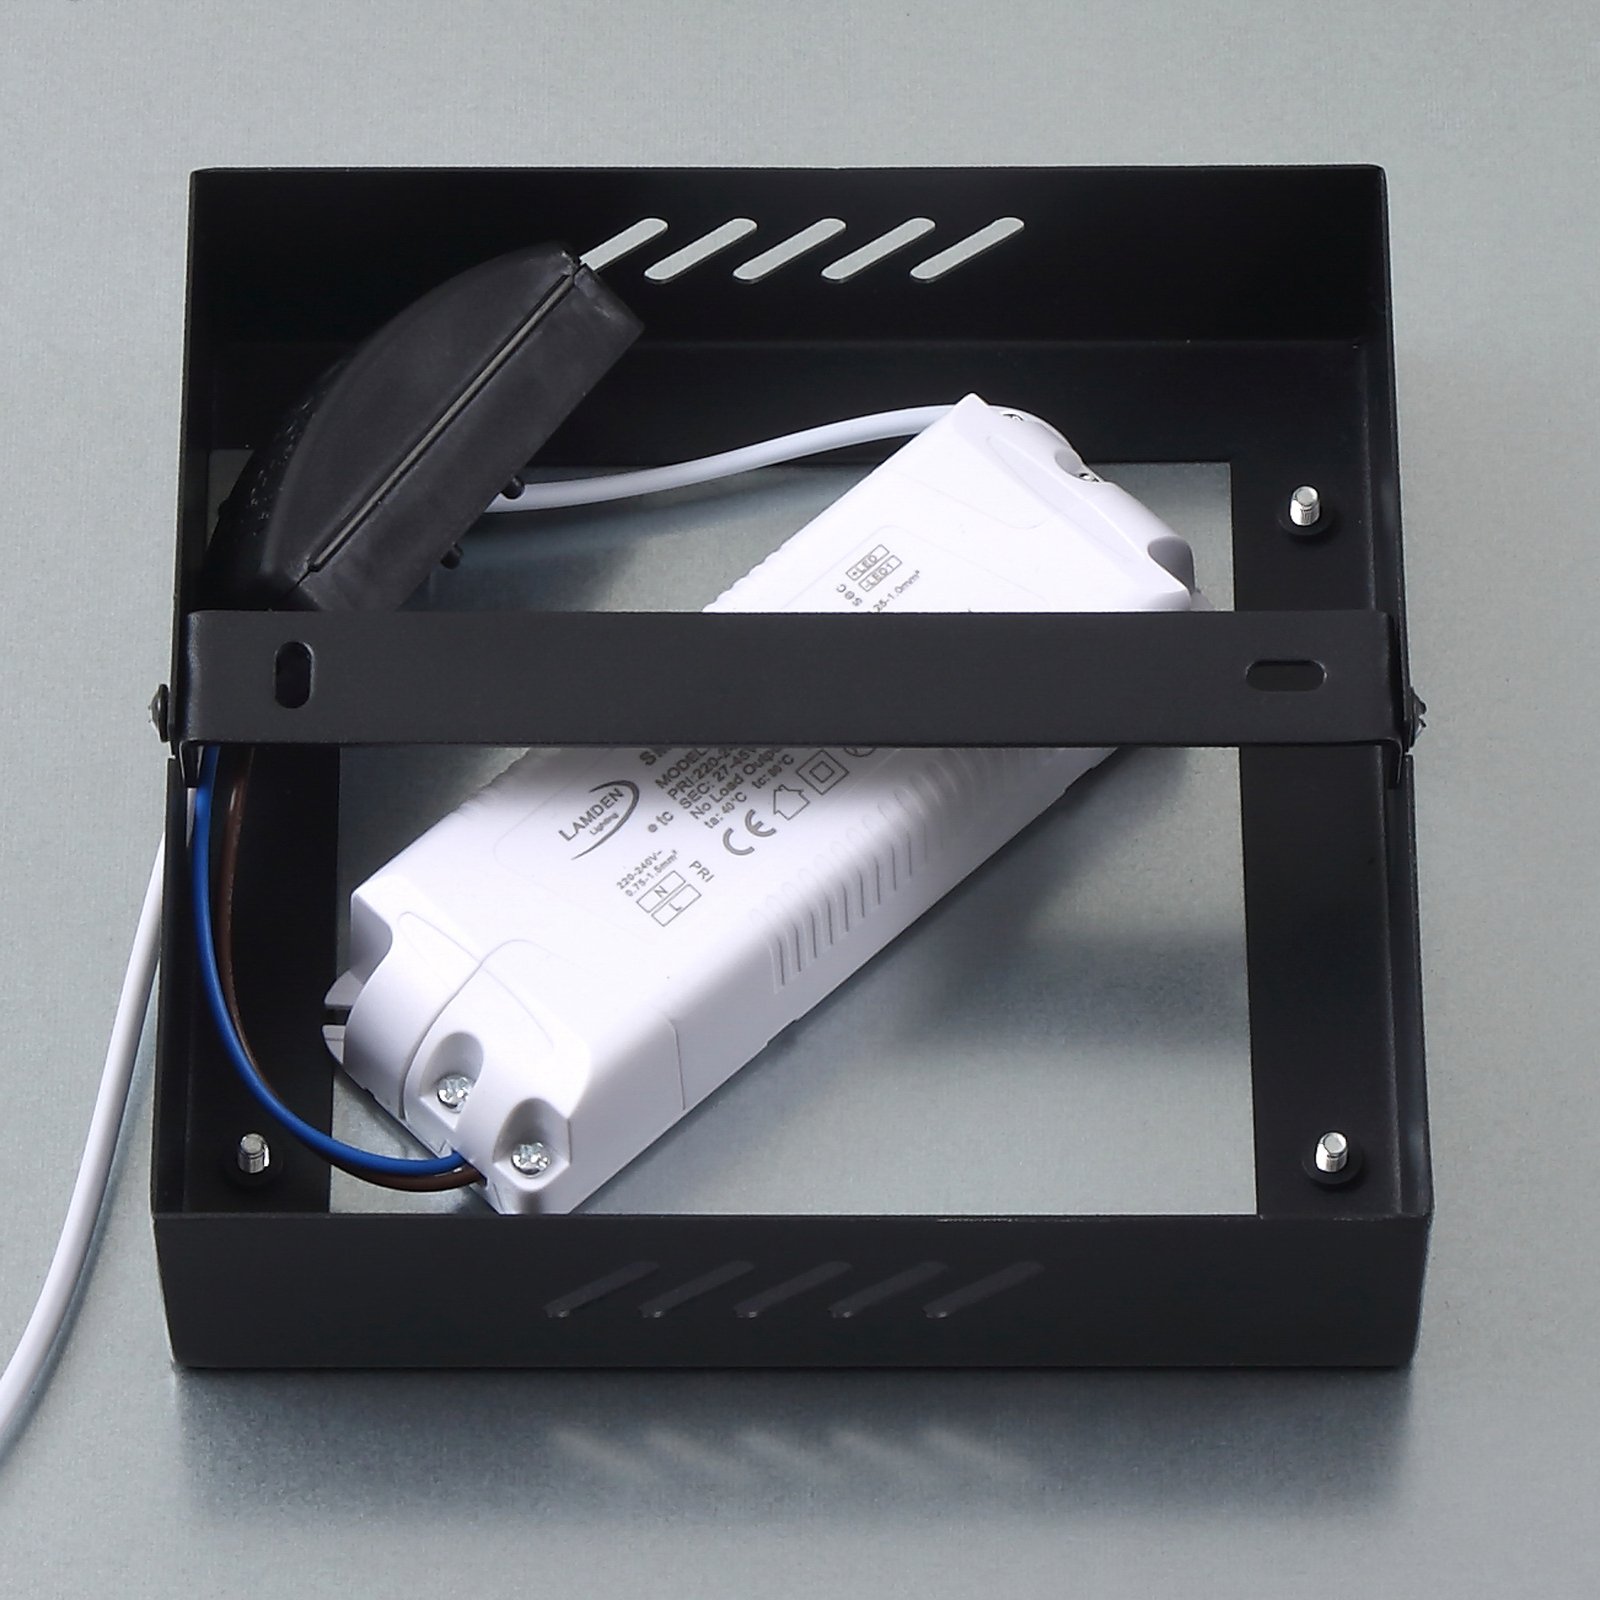 Lindby LED-paneeli Enhife, musta, 29,5 x 29,5 cm, alumiini